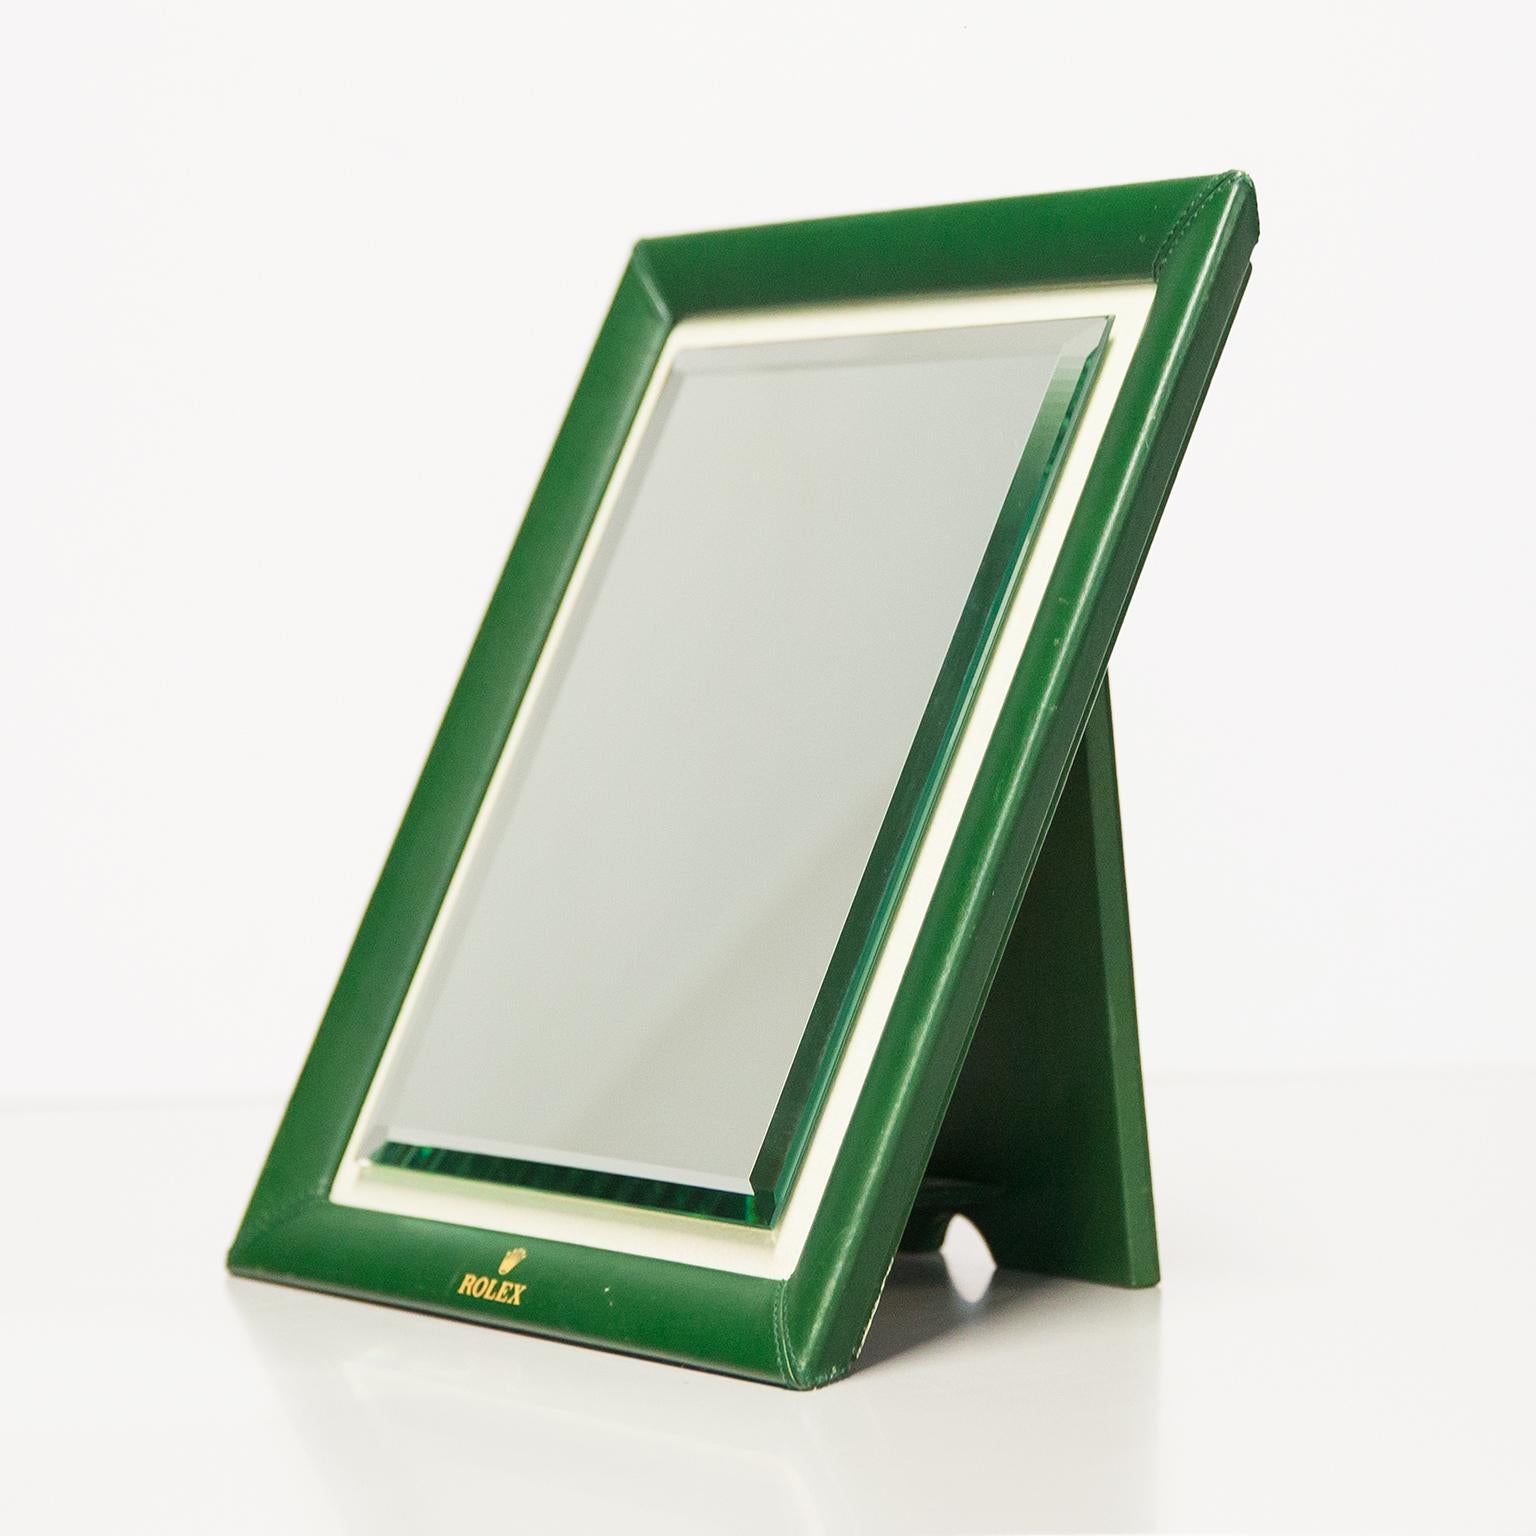 Miroir de table original de Rolex en cuir vert et verre miroir poli dans une bordure en cuir suédé. Il s'agit d'une pièce de collection et d'un objet indispensable pour tout amateur de montres ou d'horlogerie. En très bon état vintage, sans